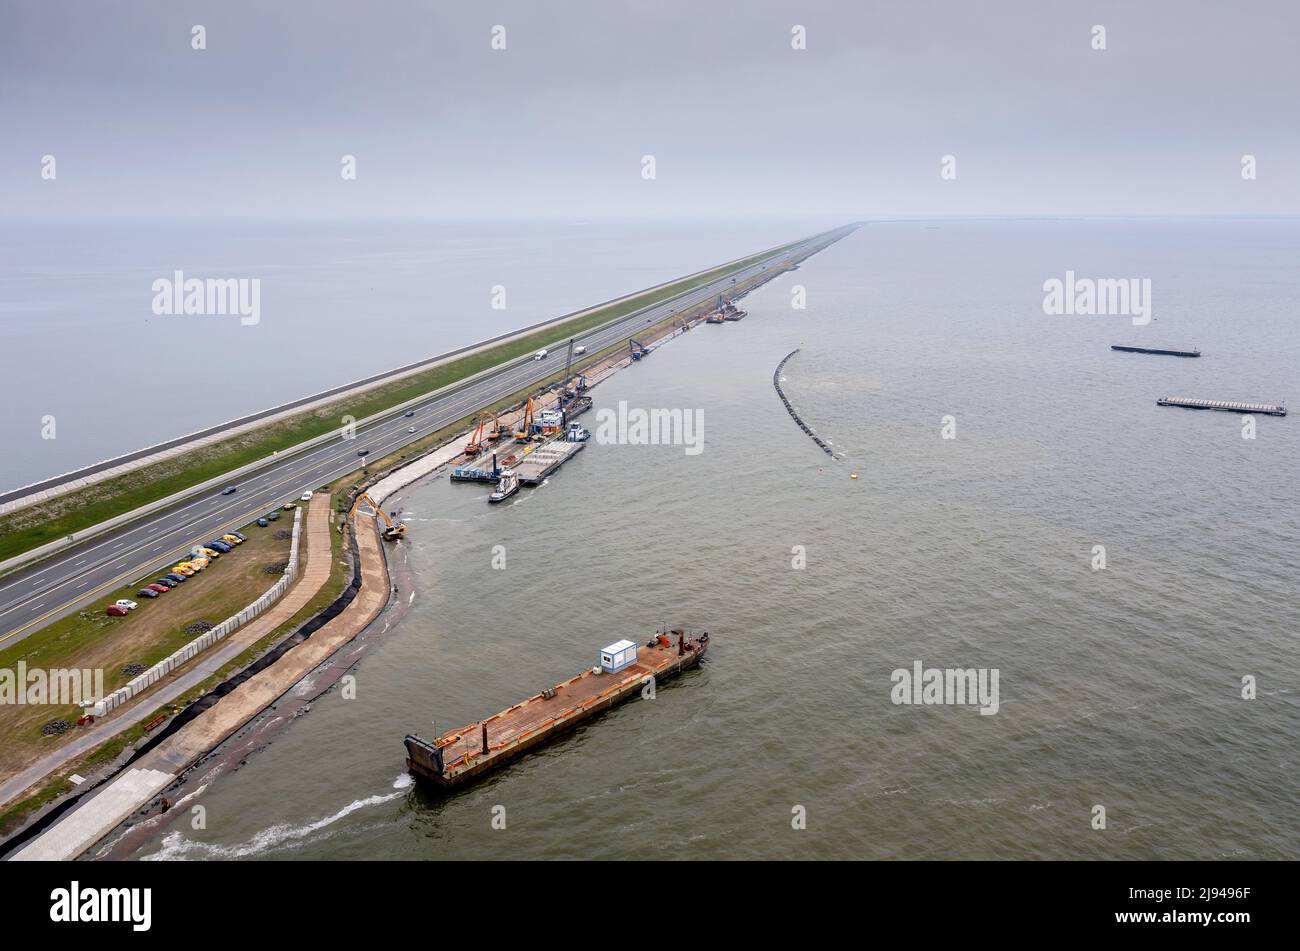 2017-09-14 17:30:09 BREZZANDDIJK - Foto drone di lavoro sul Afsluitdijk. La ristrutturazione su larga scala della diga tra l'Olanda settentrionale e la Frisia richiederà diversi anni. ANP ROBIN VAN LONKHUIJSEN olanda OUT - belgio OUT Foto Stock